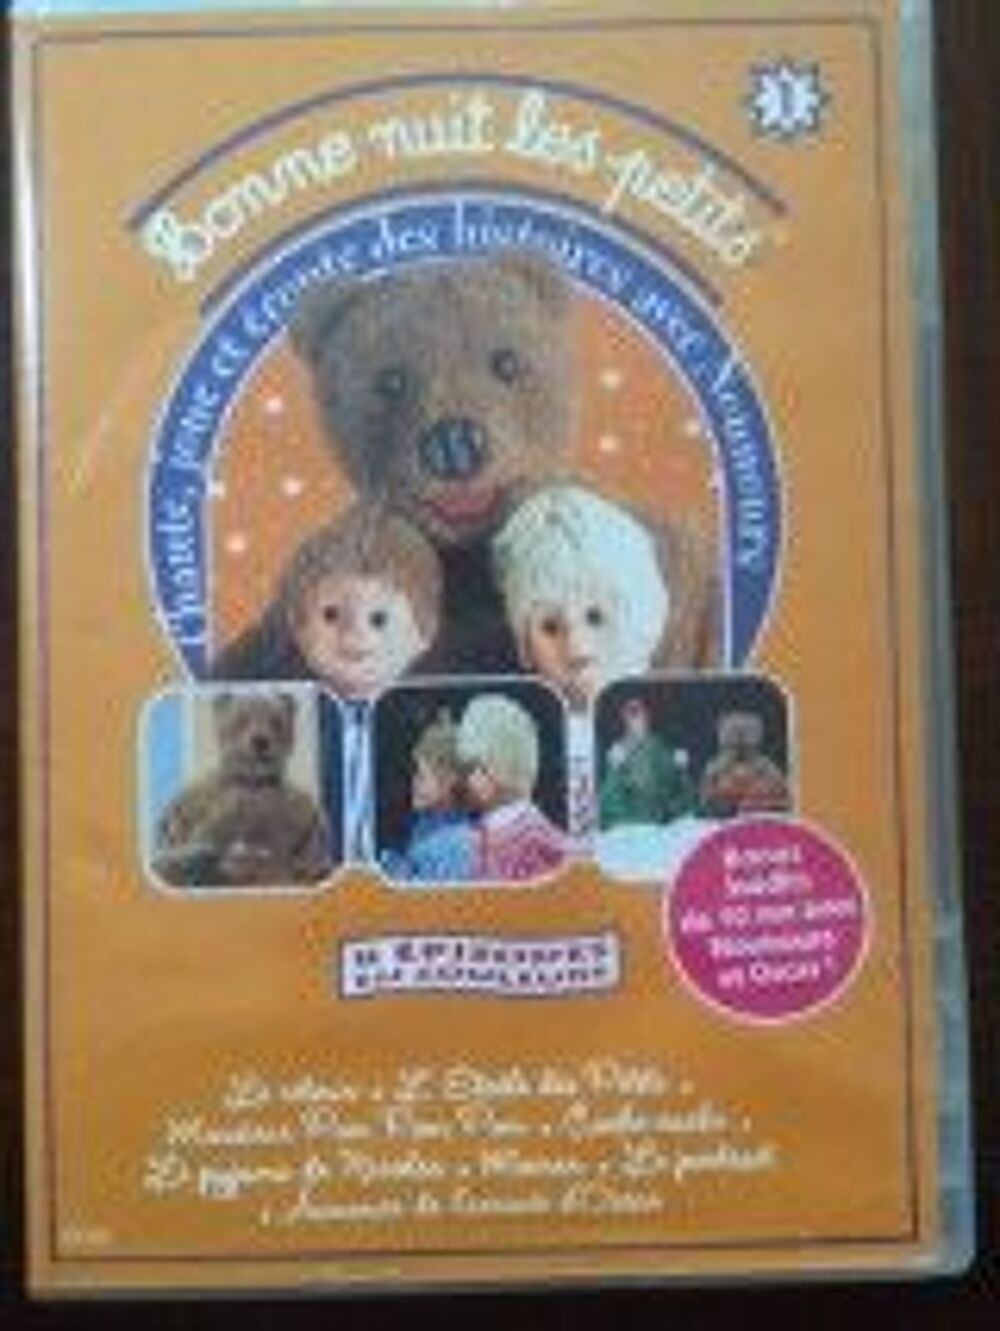 DVD DESSINS ANIMES POUR ENFANTS DVD et blu-ray